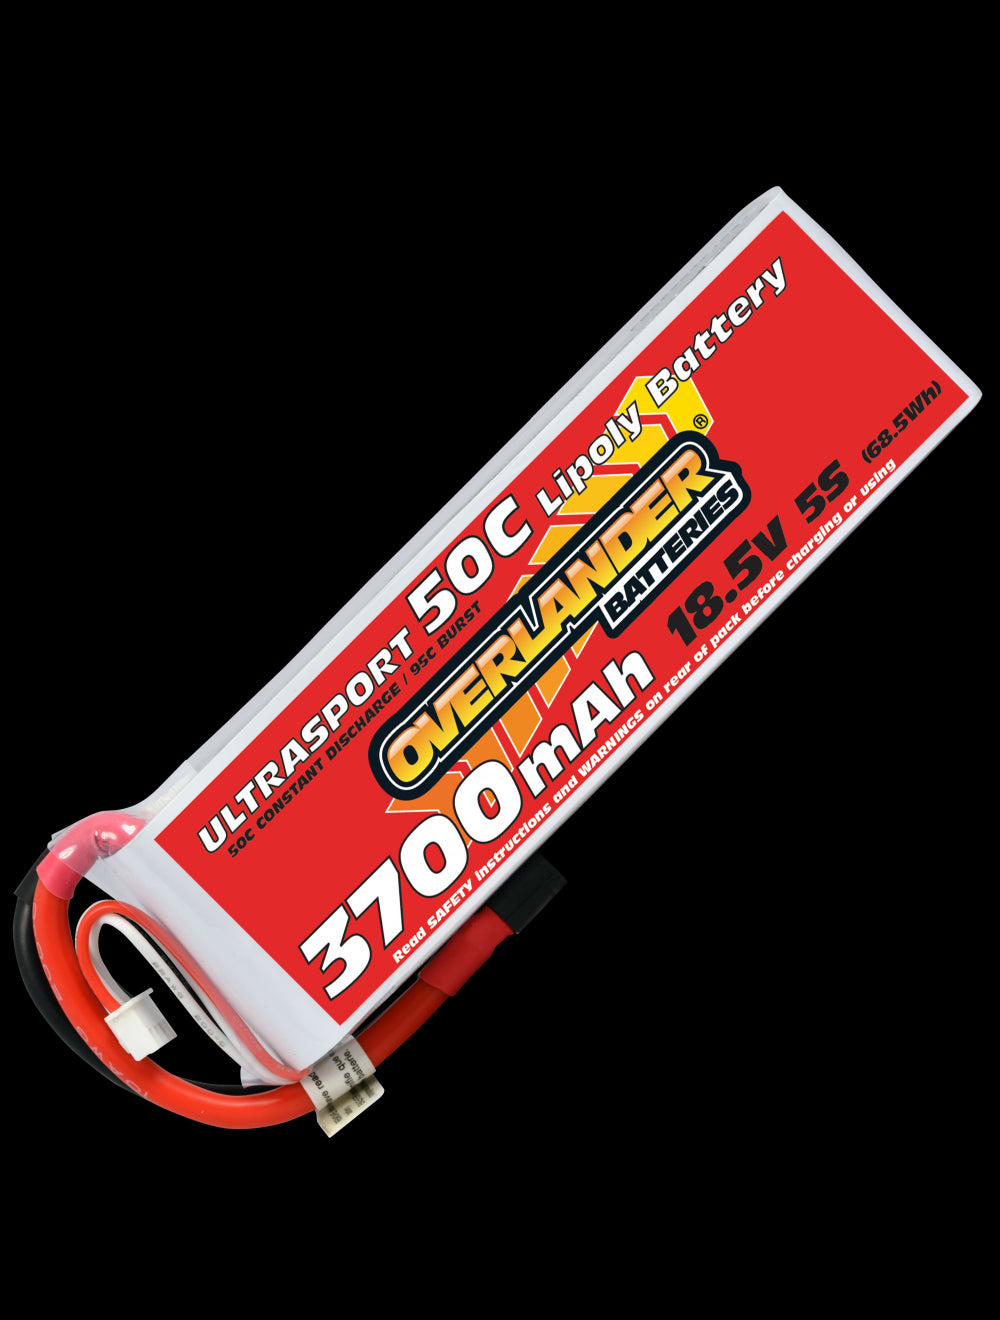 Overlander 3700mAh 18.5V 5S 50C Ultrasport LiPo Battery - XT90 Connector 3225